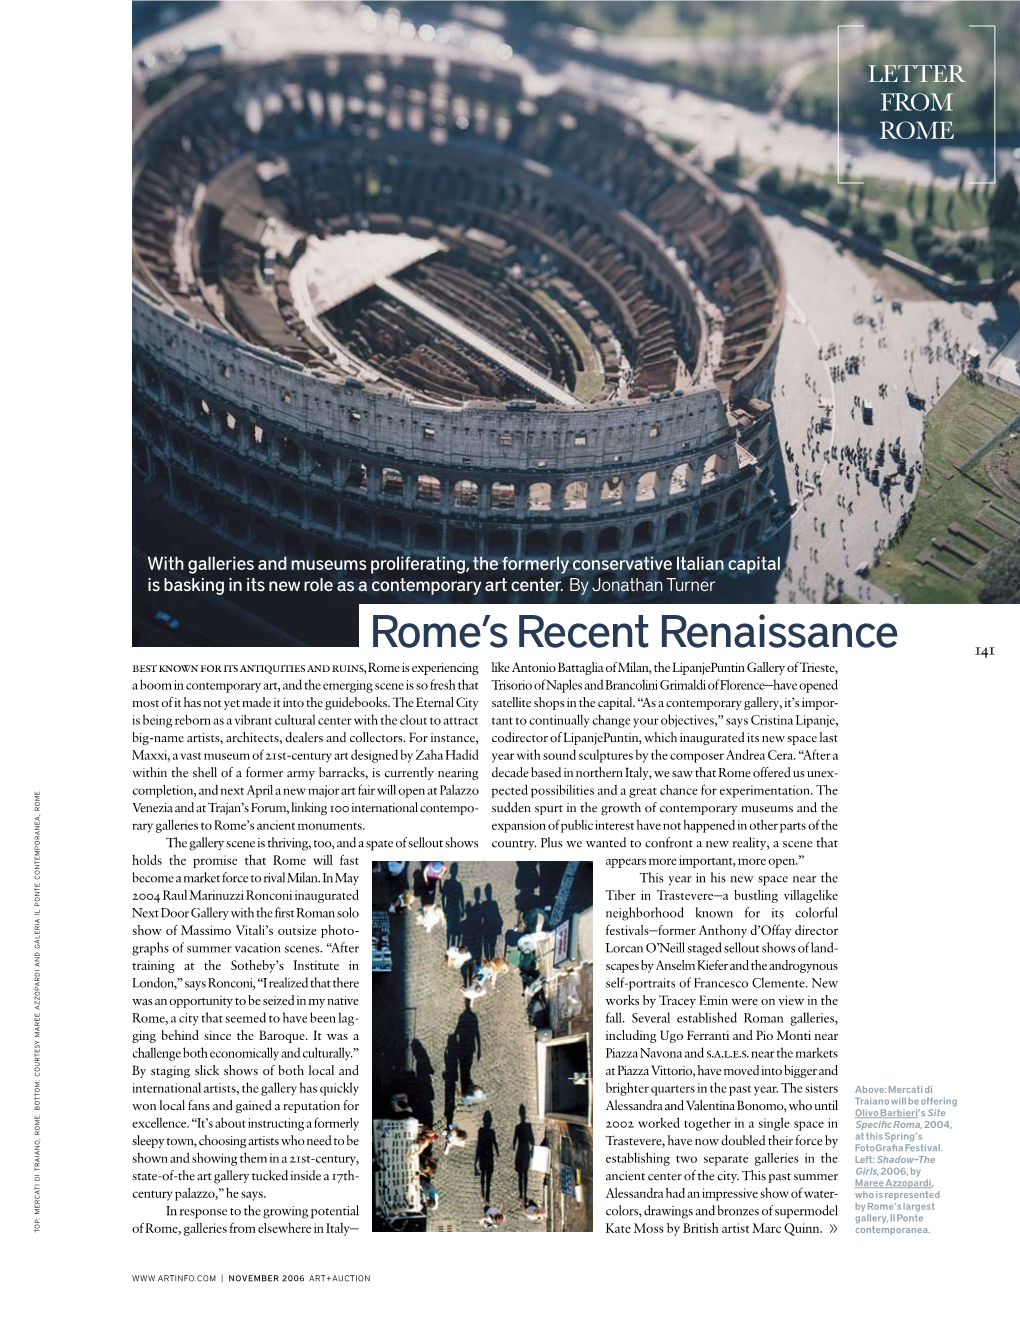 Rome's Recent Renaissance